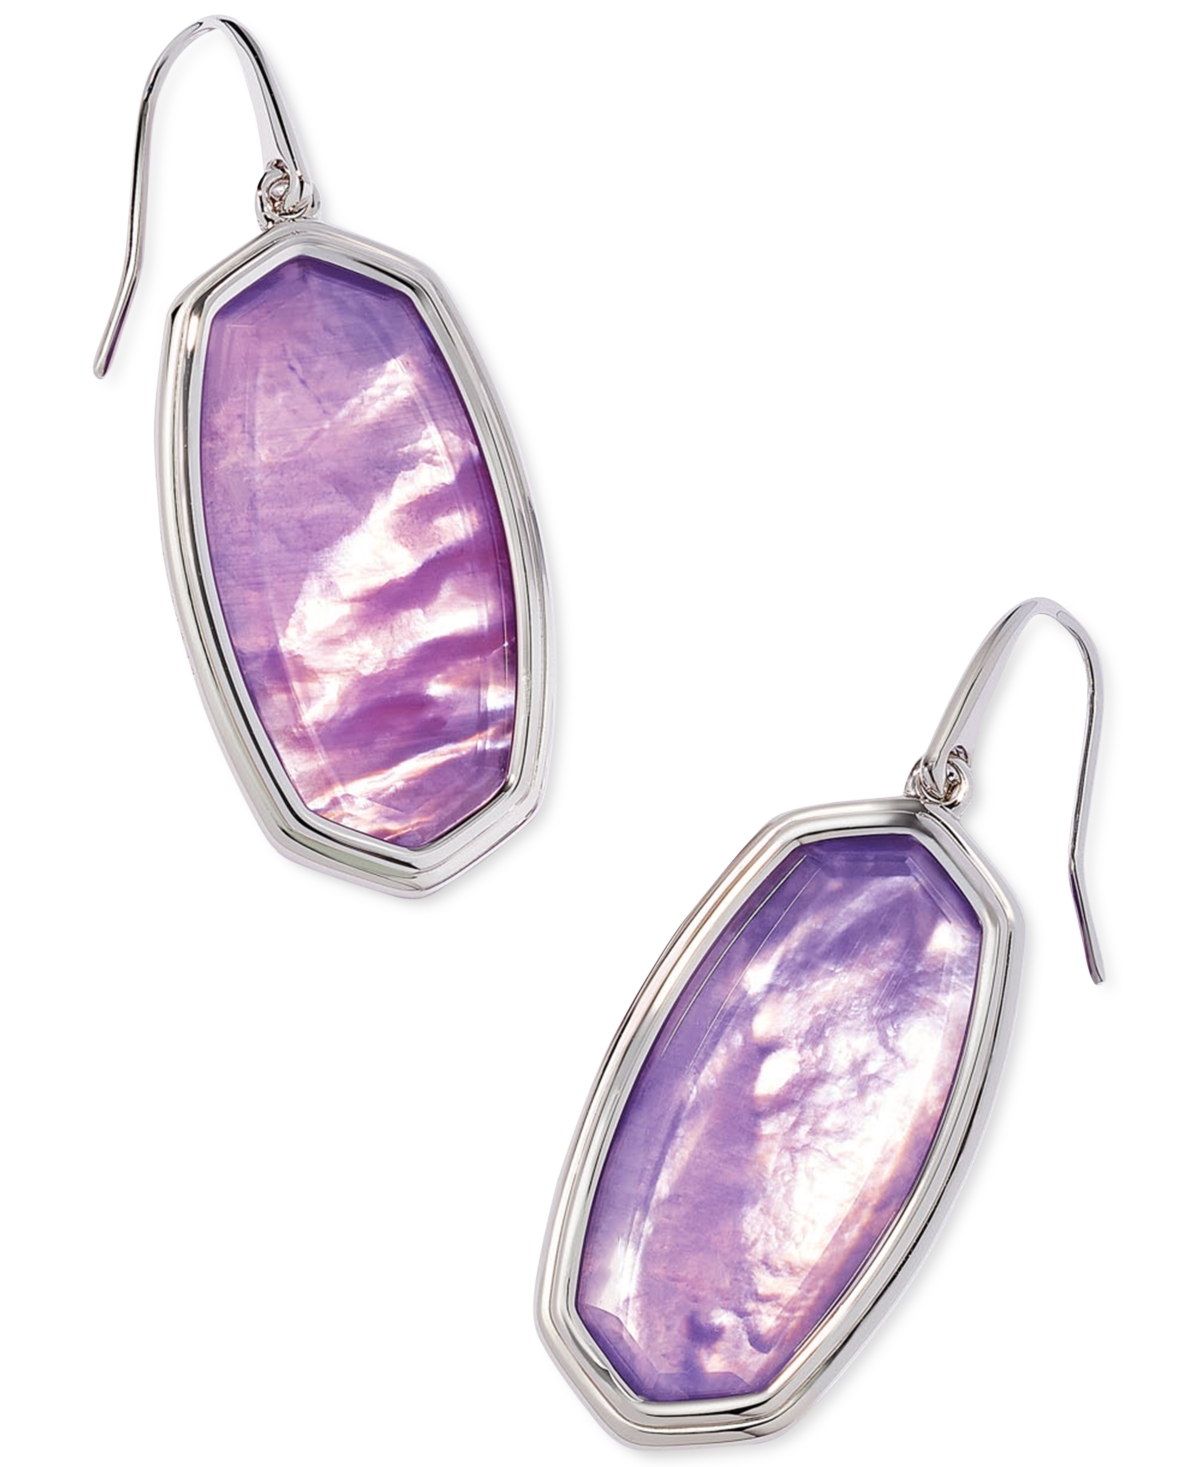 Kendra Scott Framed Elle Drop Earrings In Lavendar Opalite Illusion